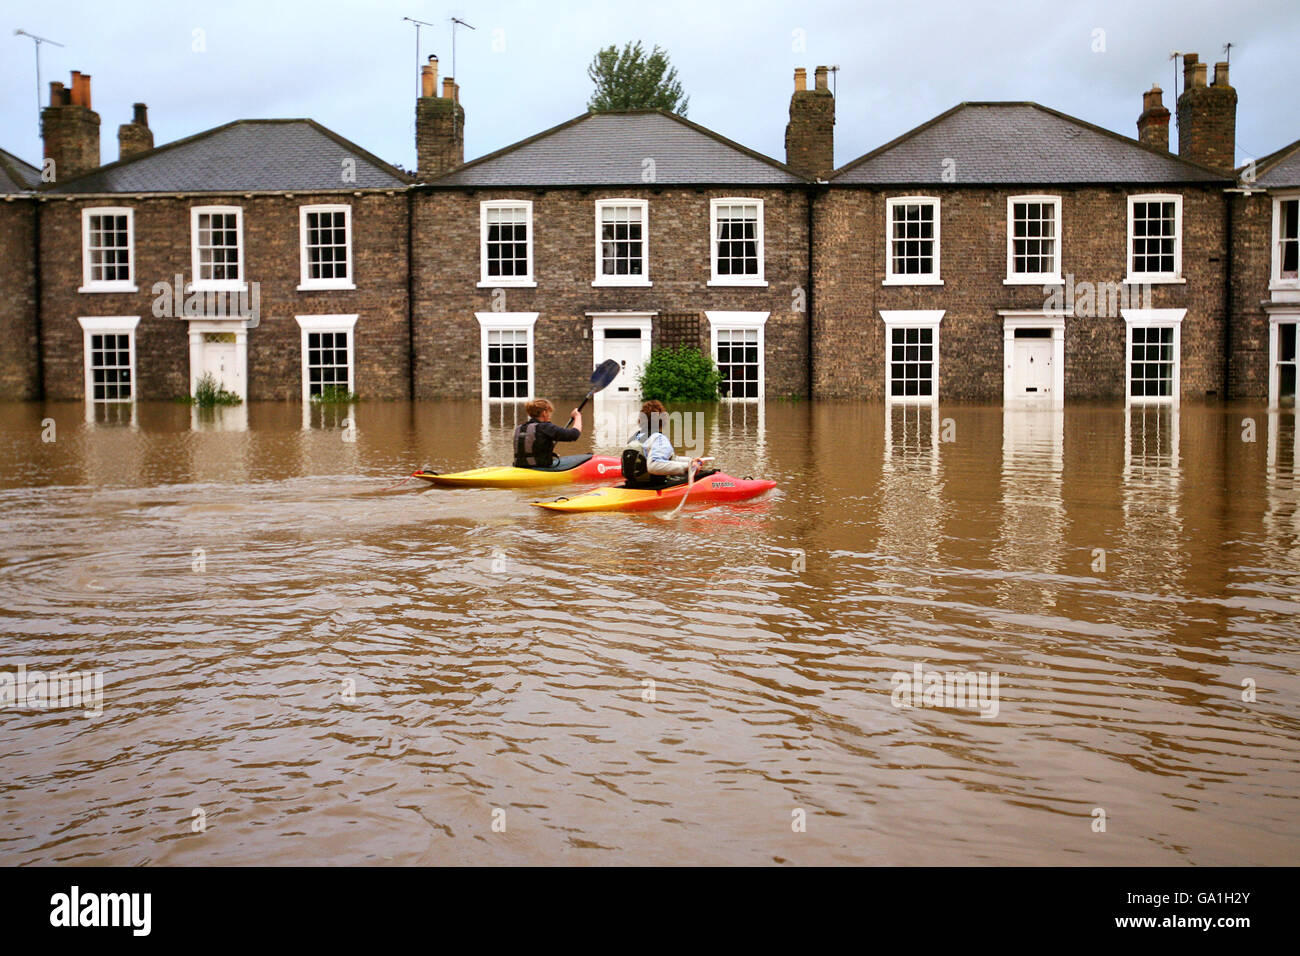 Großbritannien wird von Überschwemmungen heimgesucht. Kanufahrer nutzen heute die Fluten in Beverley, East Yorkshire. Stockfoto